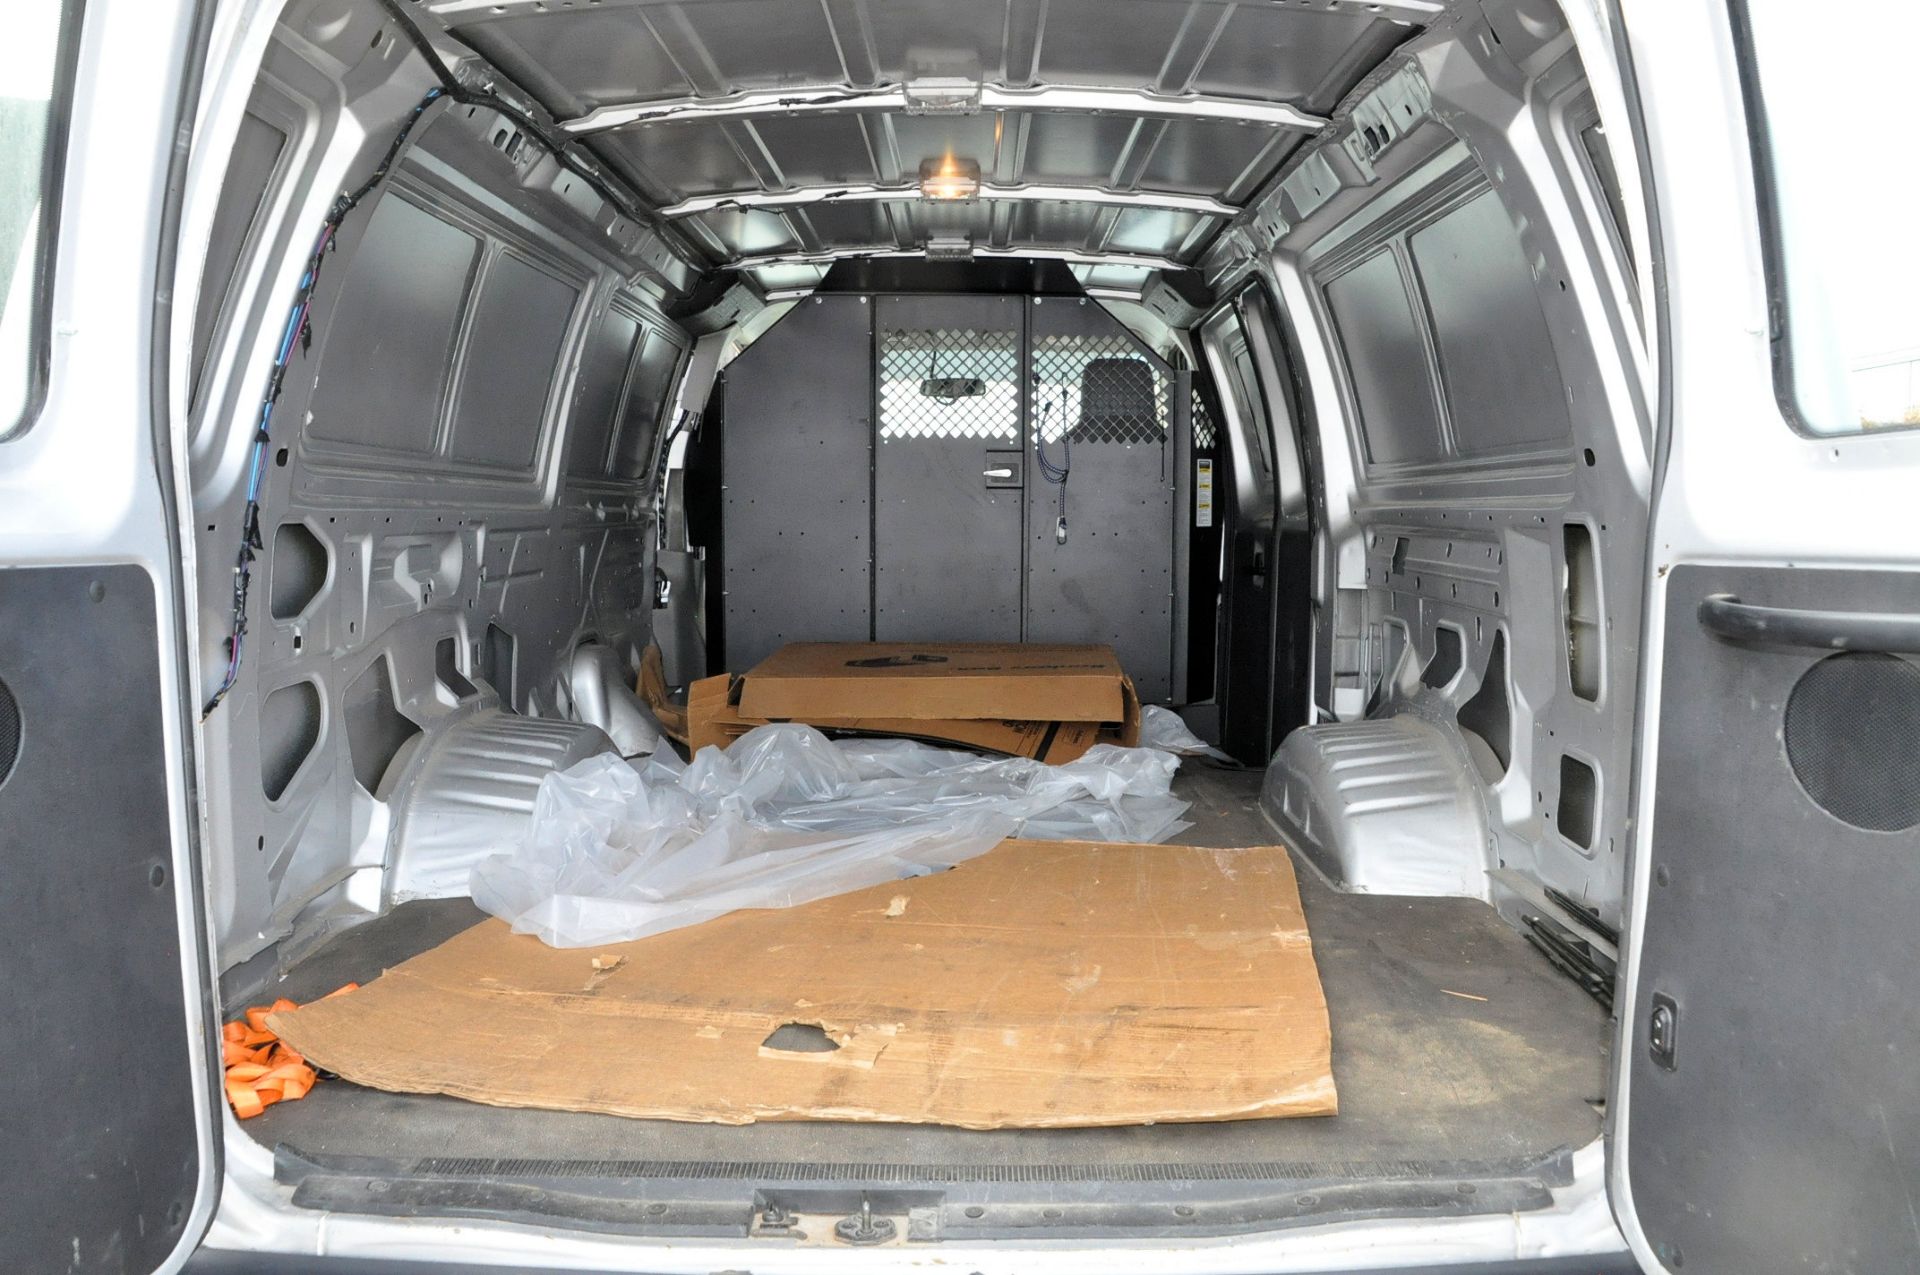 2012 Ford F-350 Econoline Extended Cargo Van, VIN 1FTSS3EL2CDA75075, 5.4L Gasoline Engine, 38,015 - Image 7 of 10